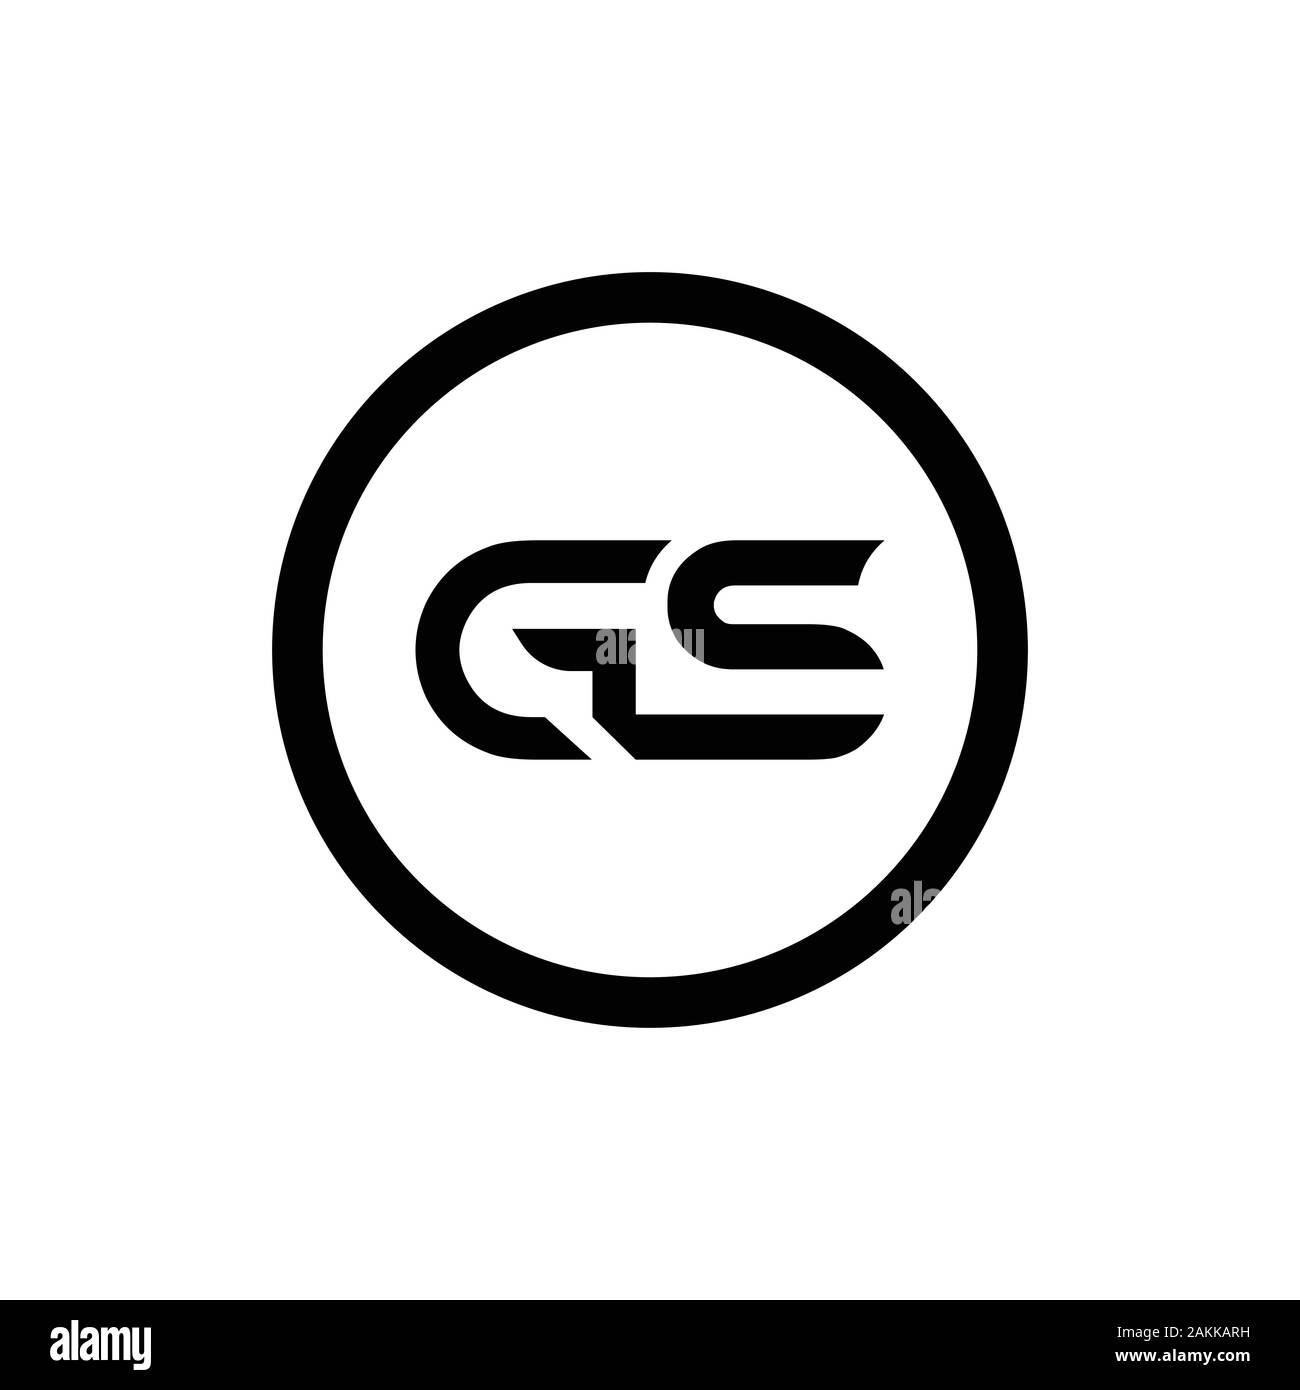 Gs logo Royalty Free Vector Image - VectorStock